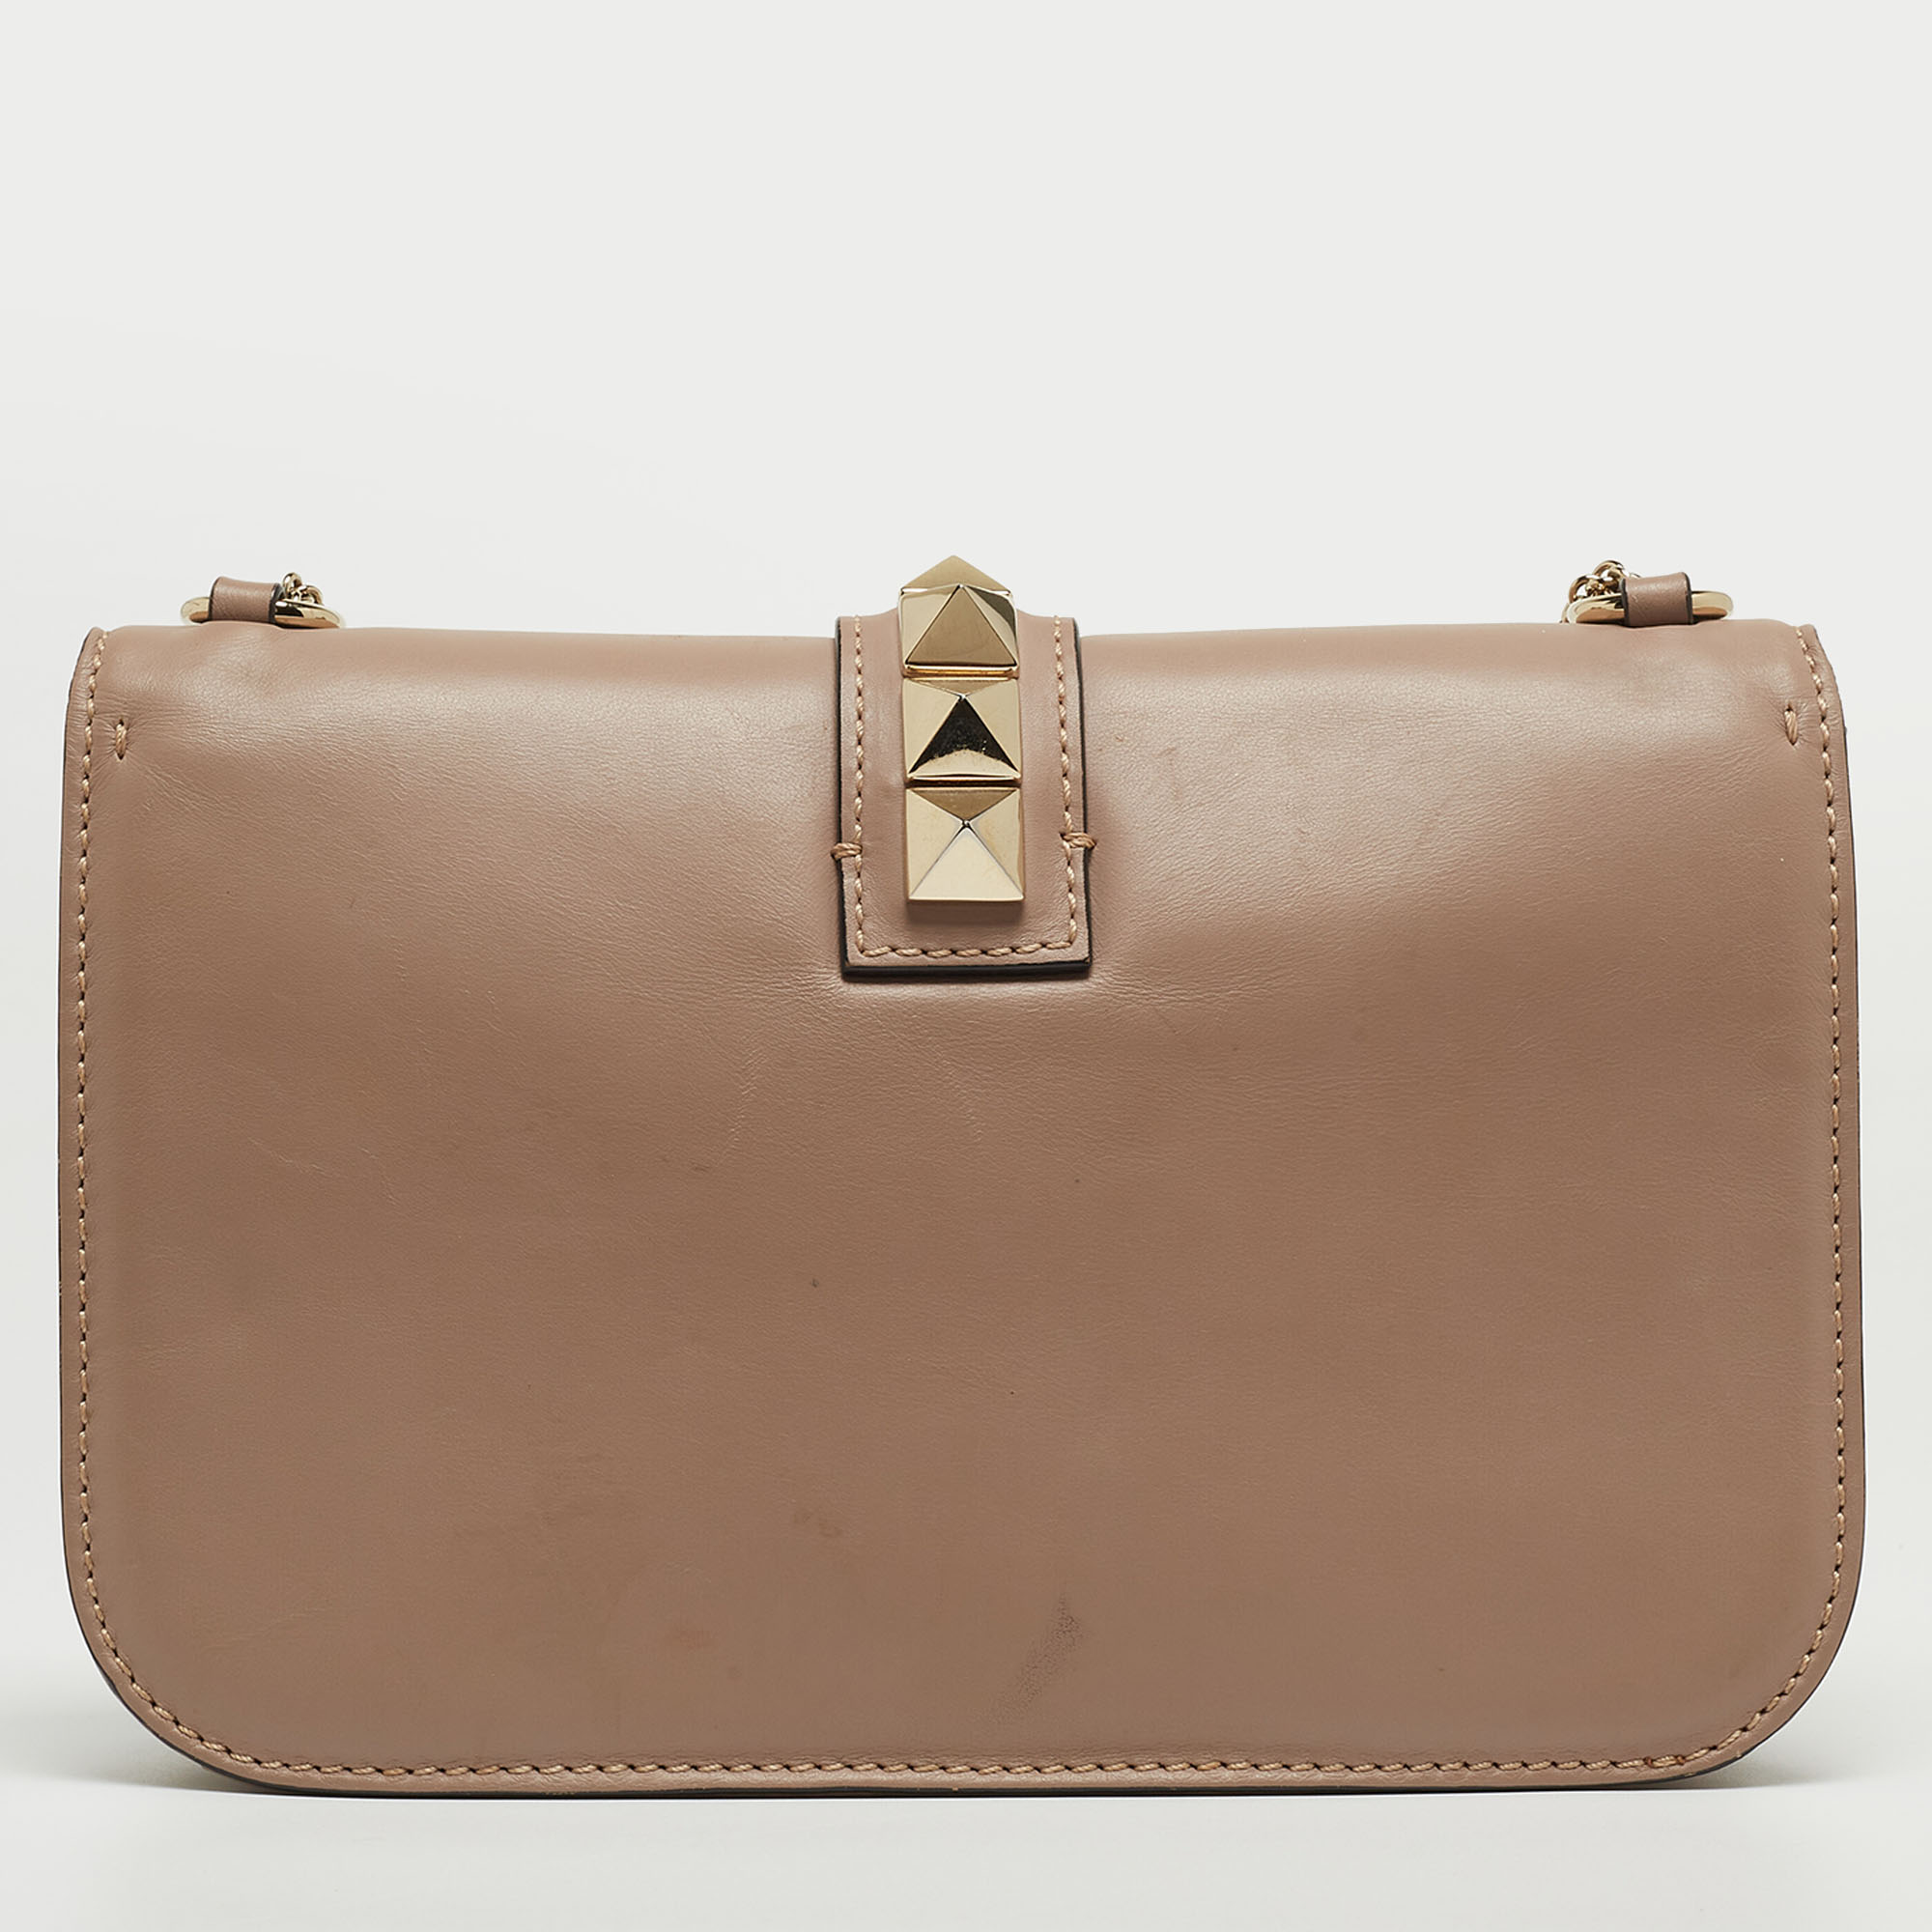 Valentino Old Rose Leather Medium Rockstud Glam Lock Flap Bag